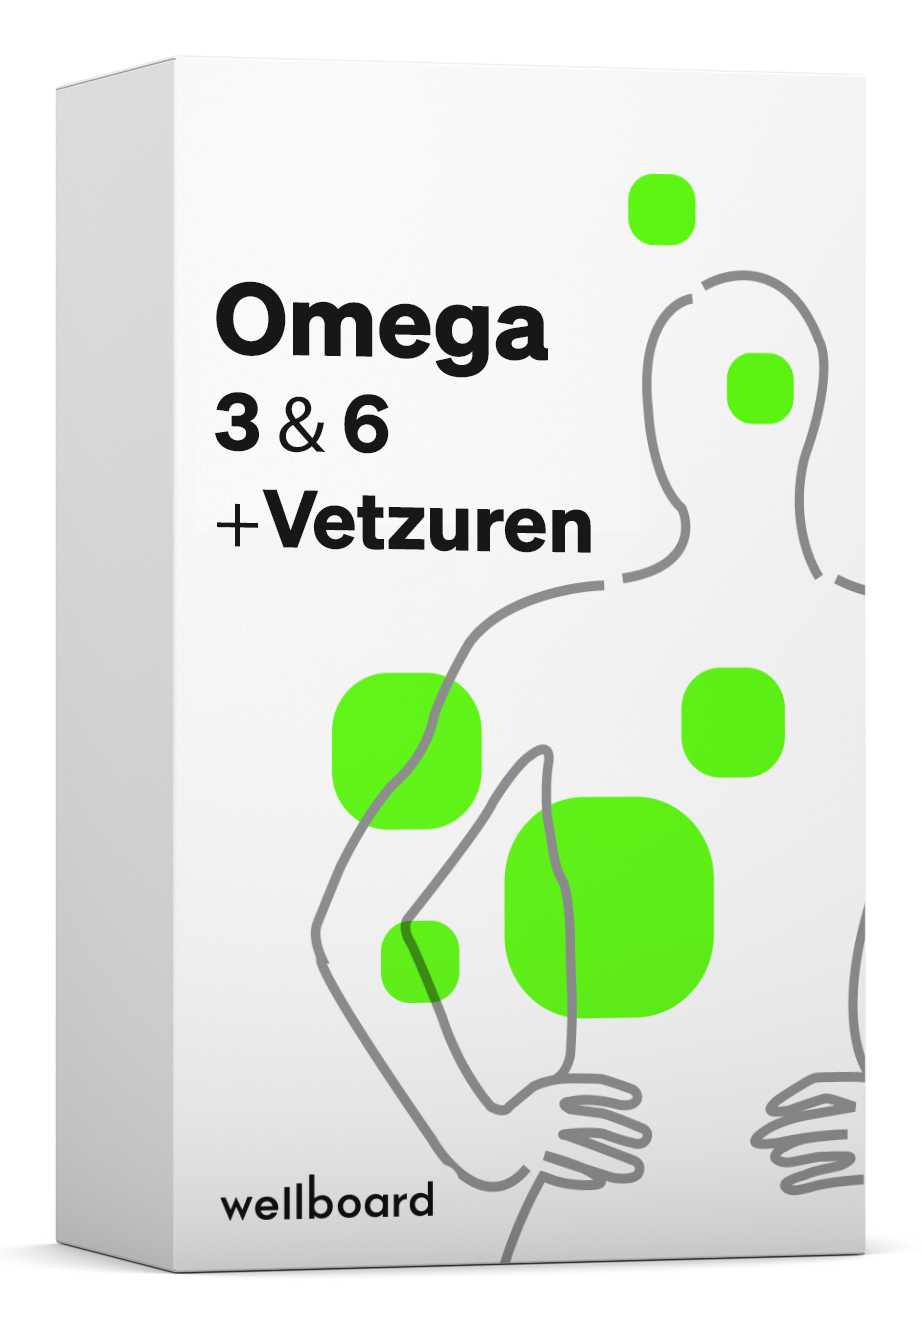 Omega 3 & + Vetzuren Test - Wellboard